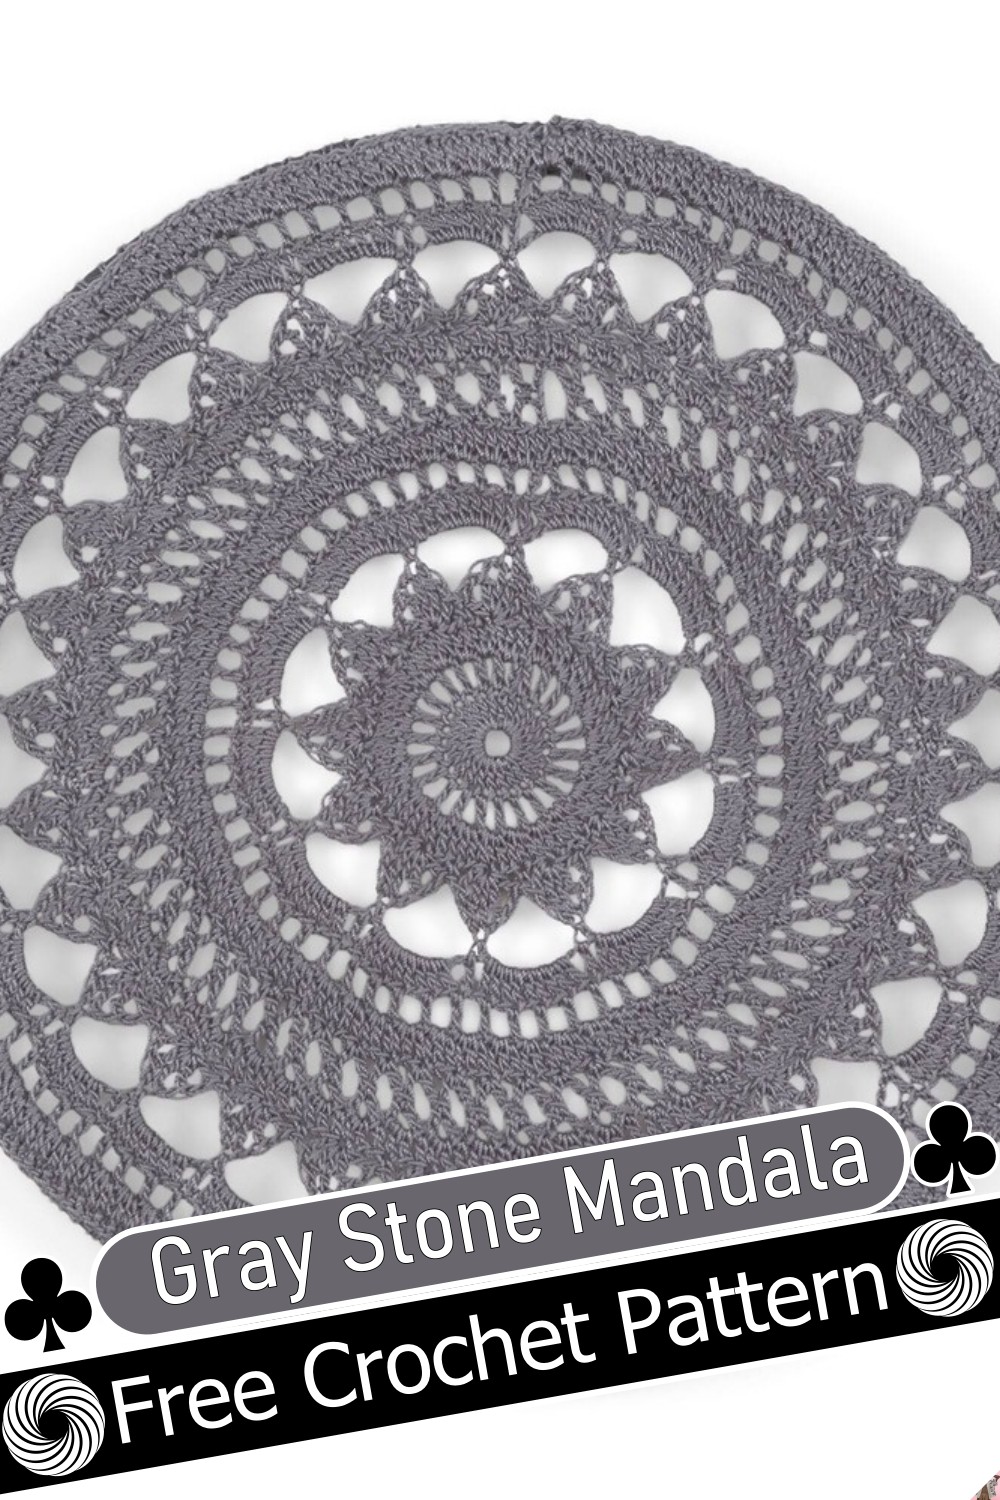 Gray Stone Mandala